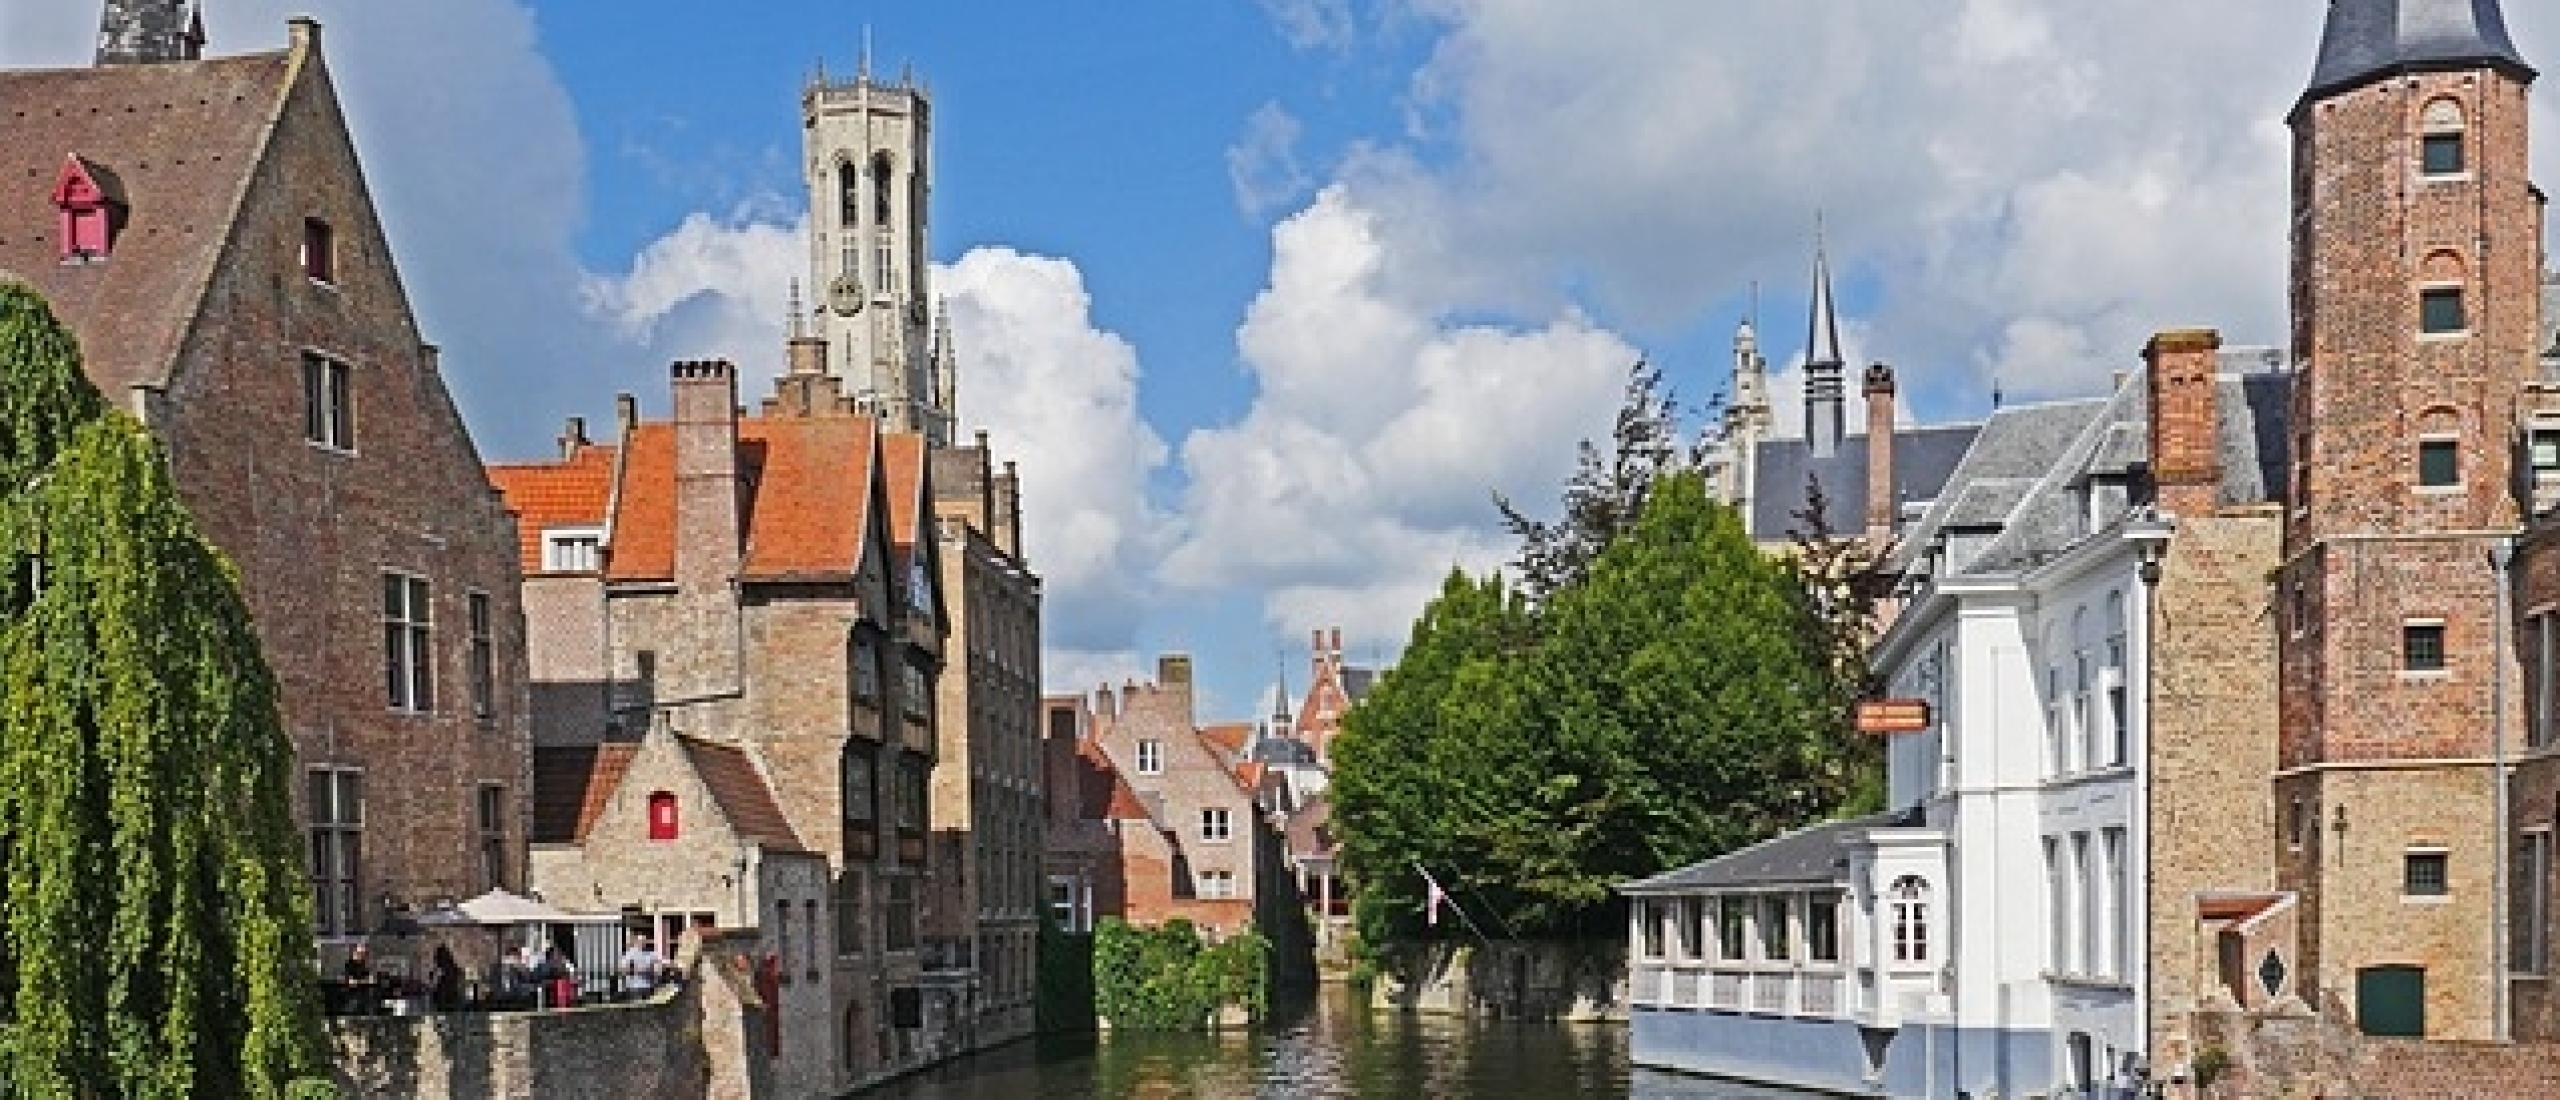 Grachten Brugge